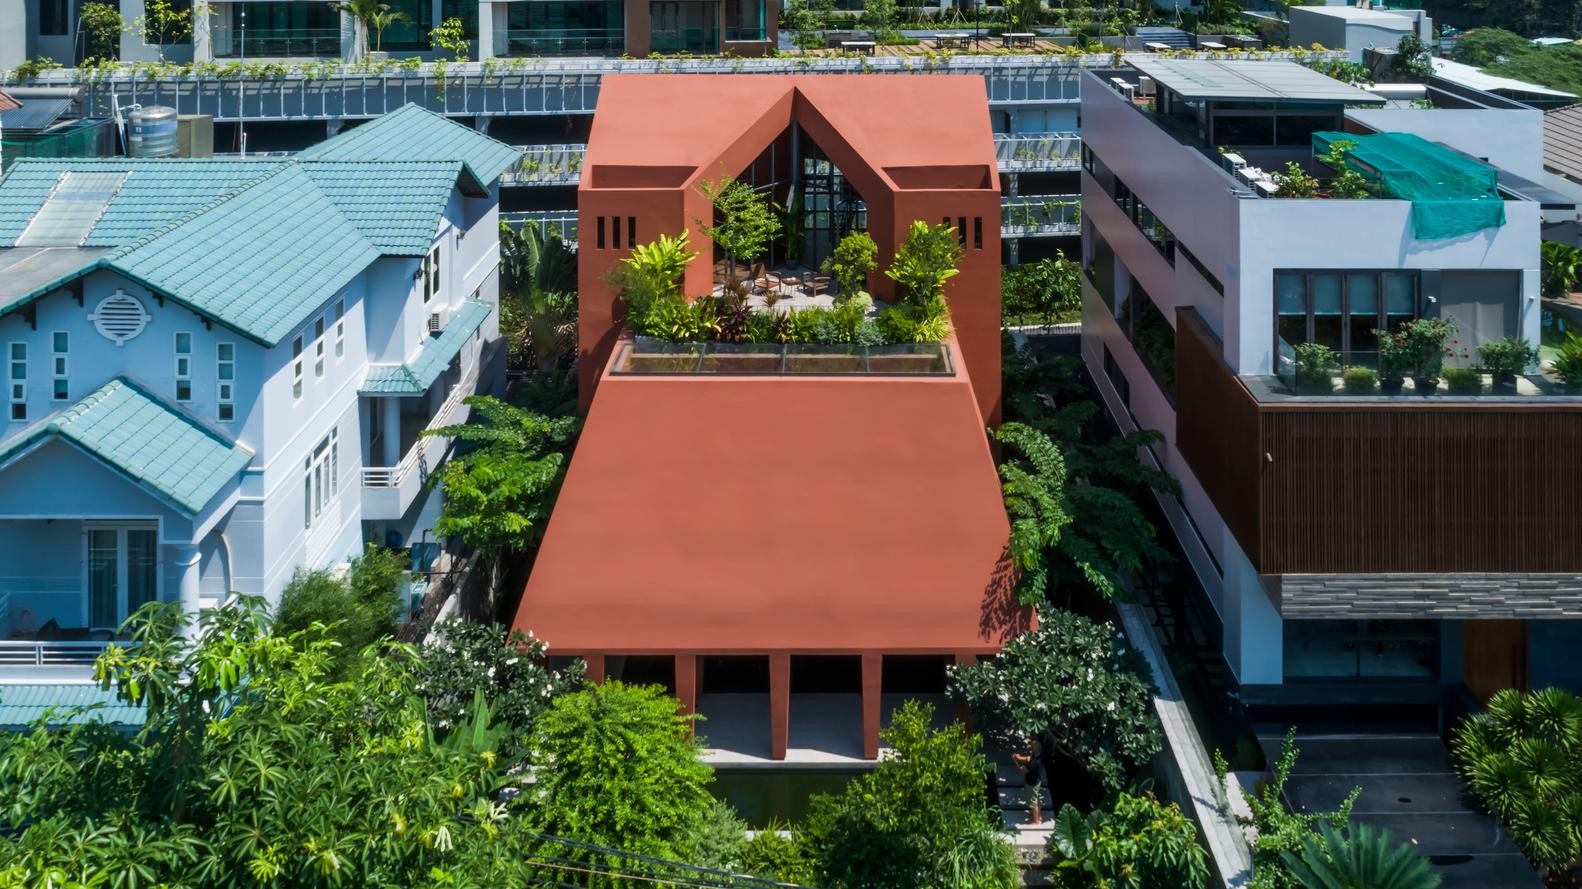 Mê mẩn không gian bên trong biệt thự đỏ 'độc nhất vô nhị' ở Việt Nam ảnh 2